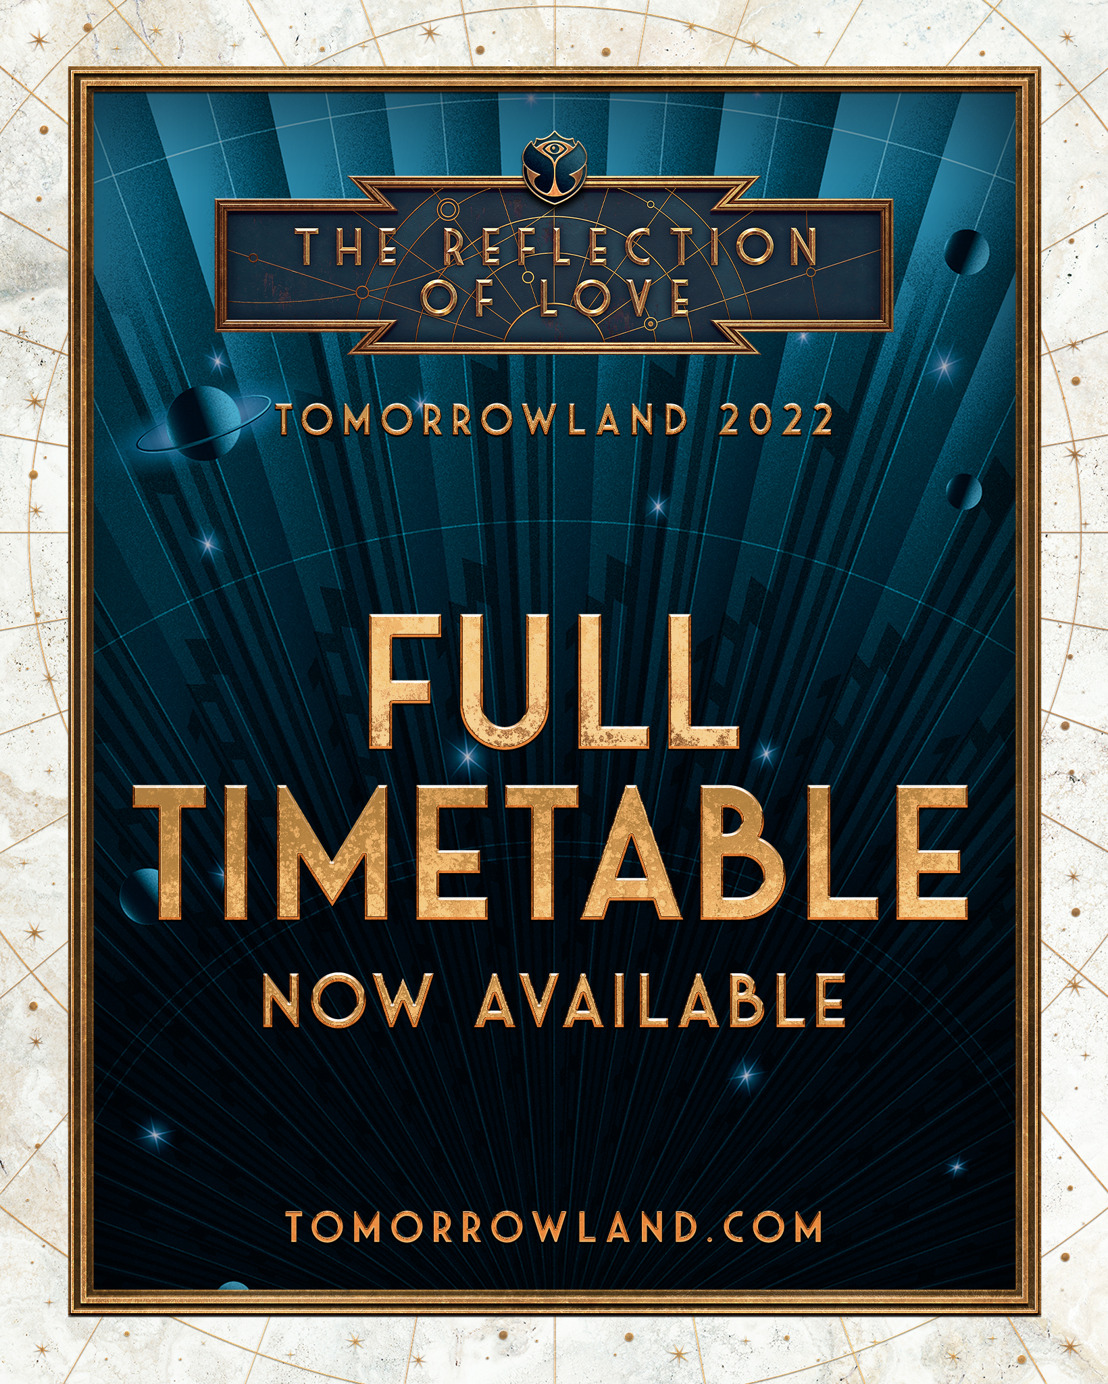 Tomorrowland onthult de volledige line-up, timetable en trailer voor deze zomer